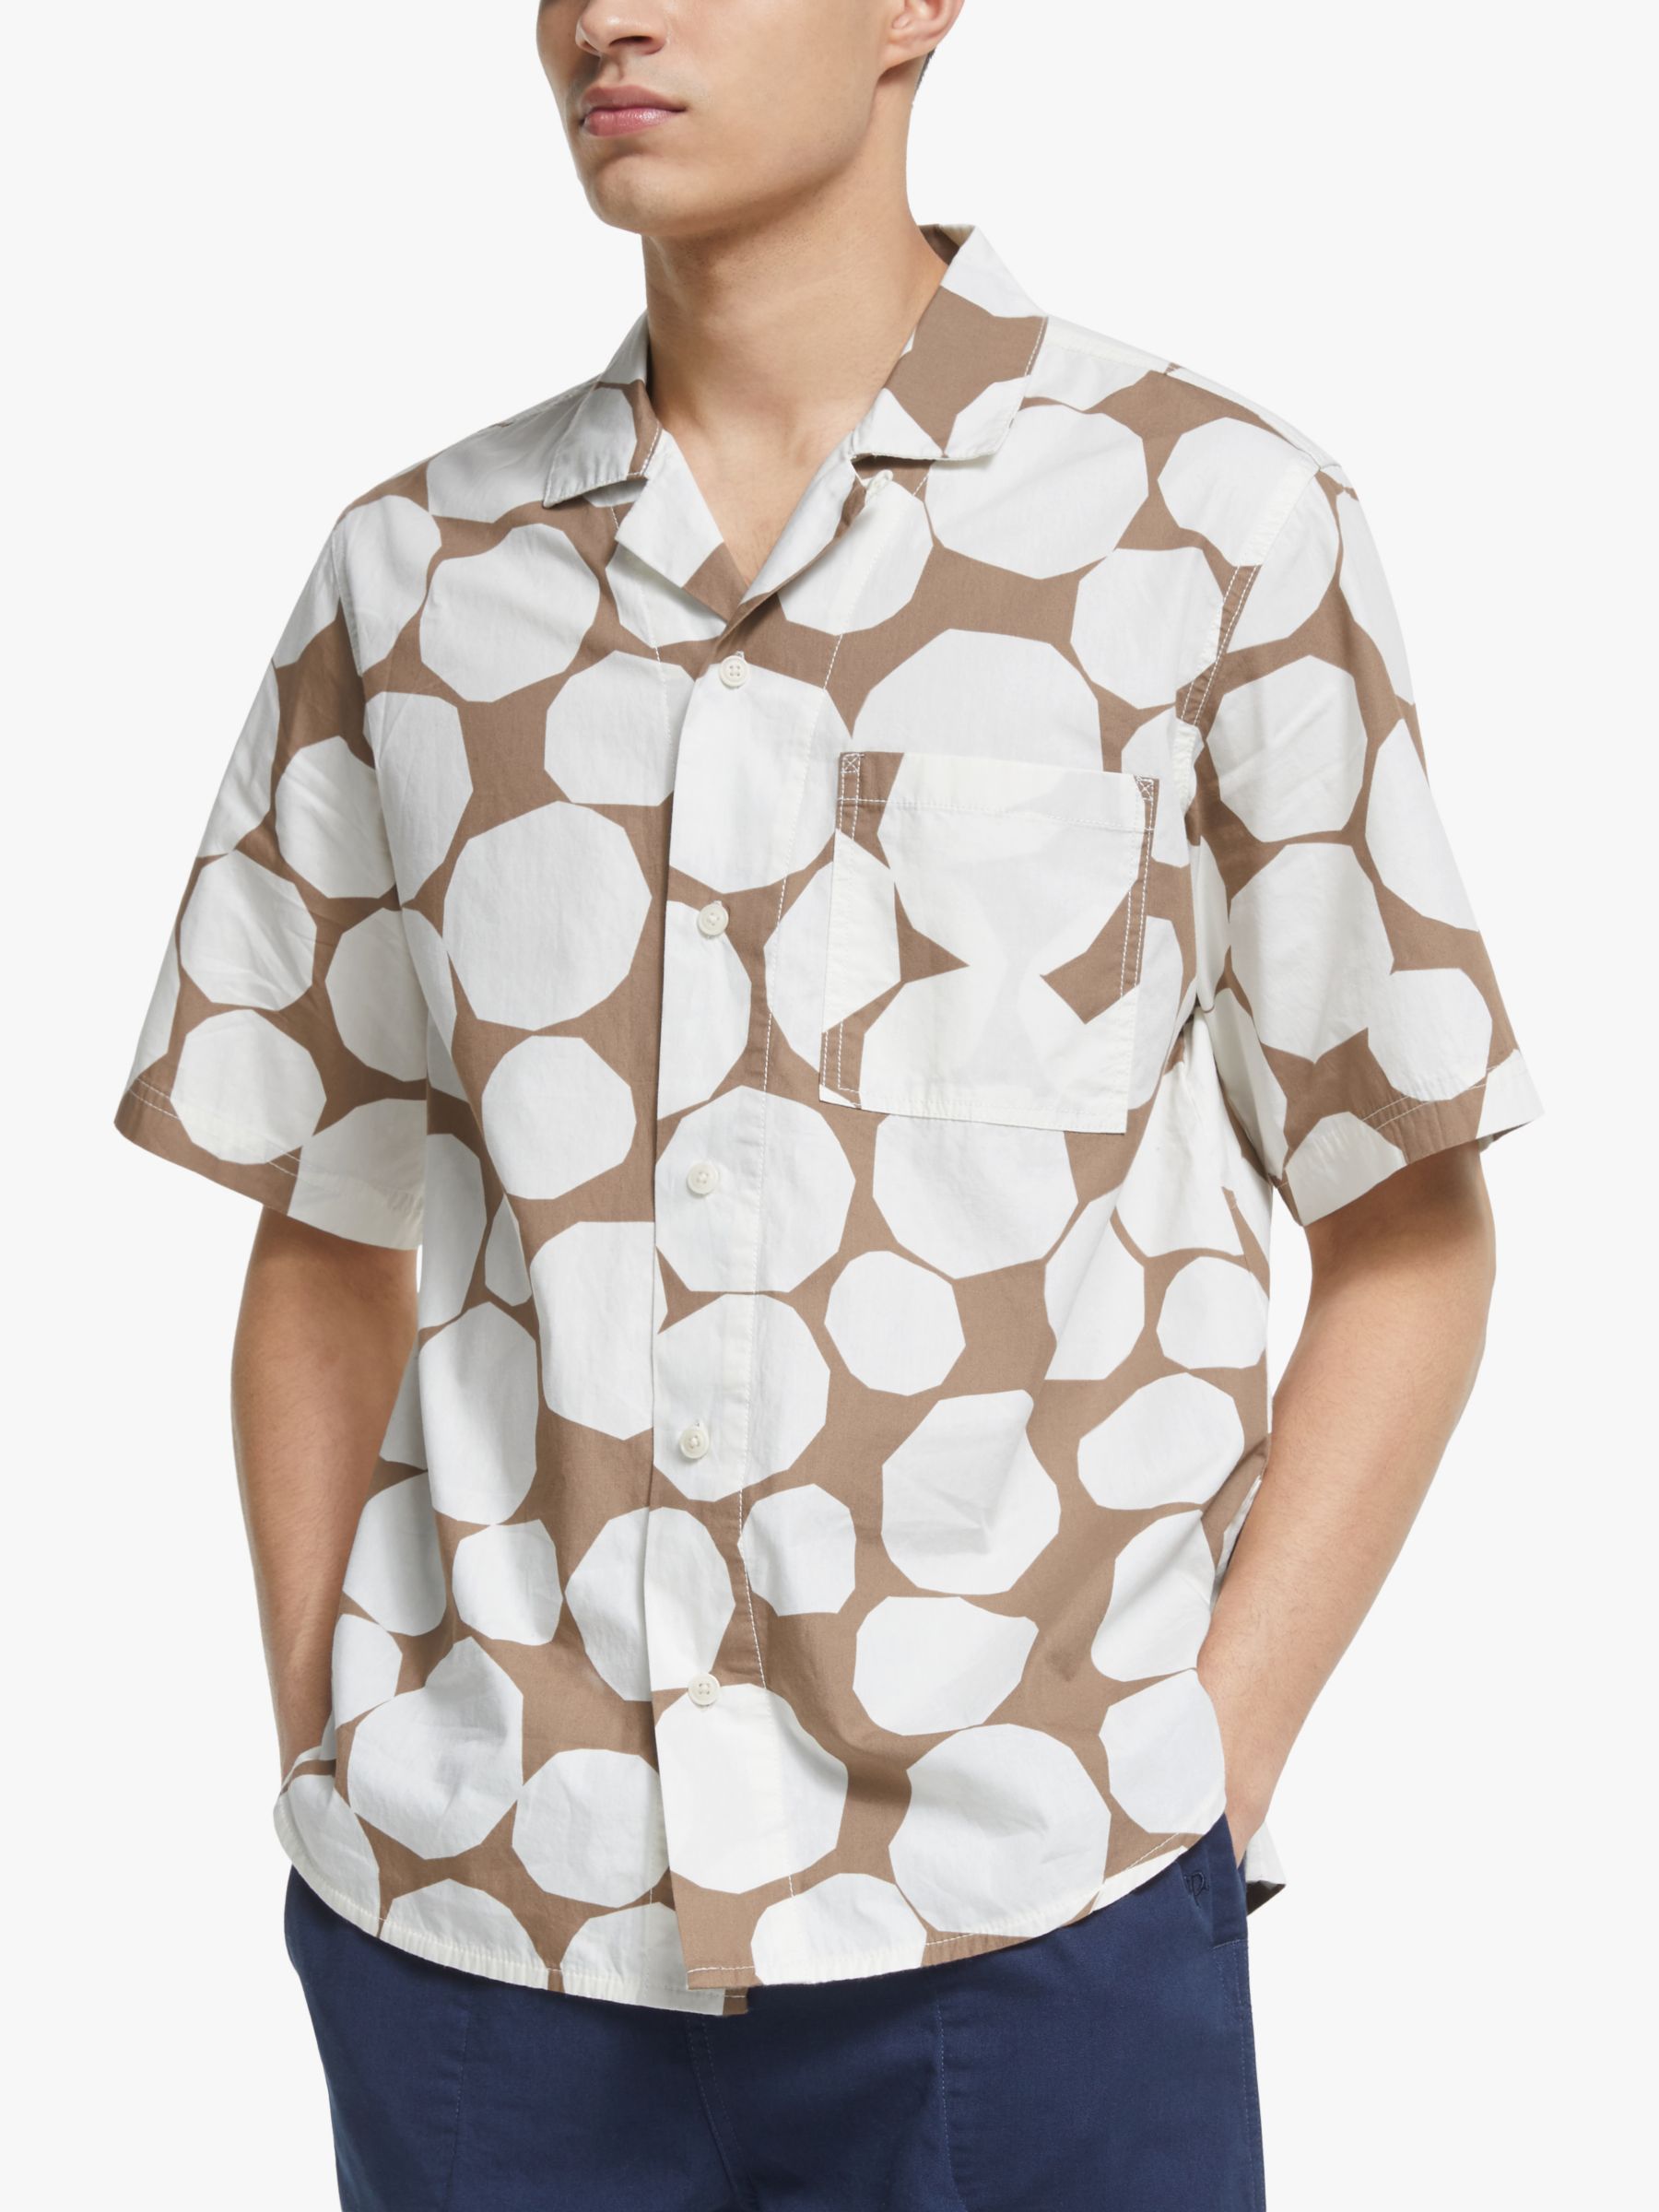 Garbstore Slacker Print Bowling Shirt